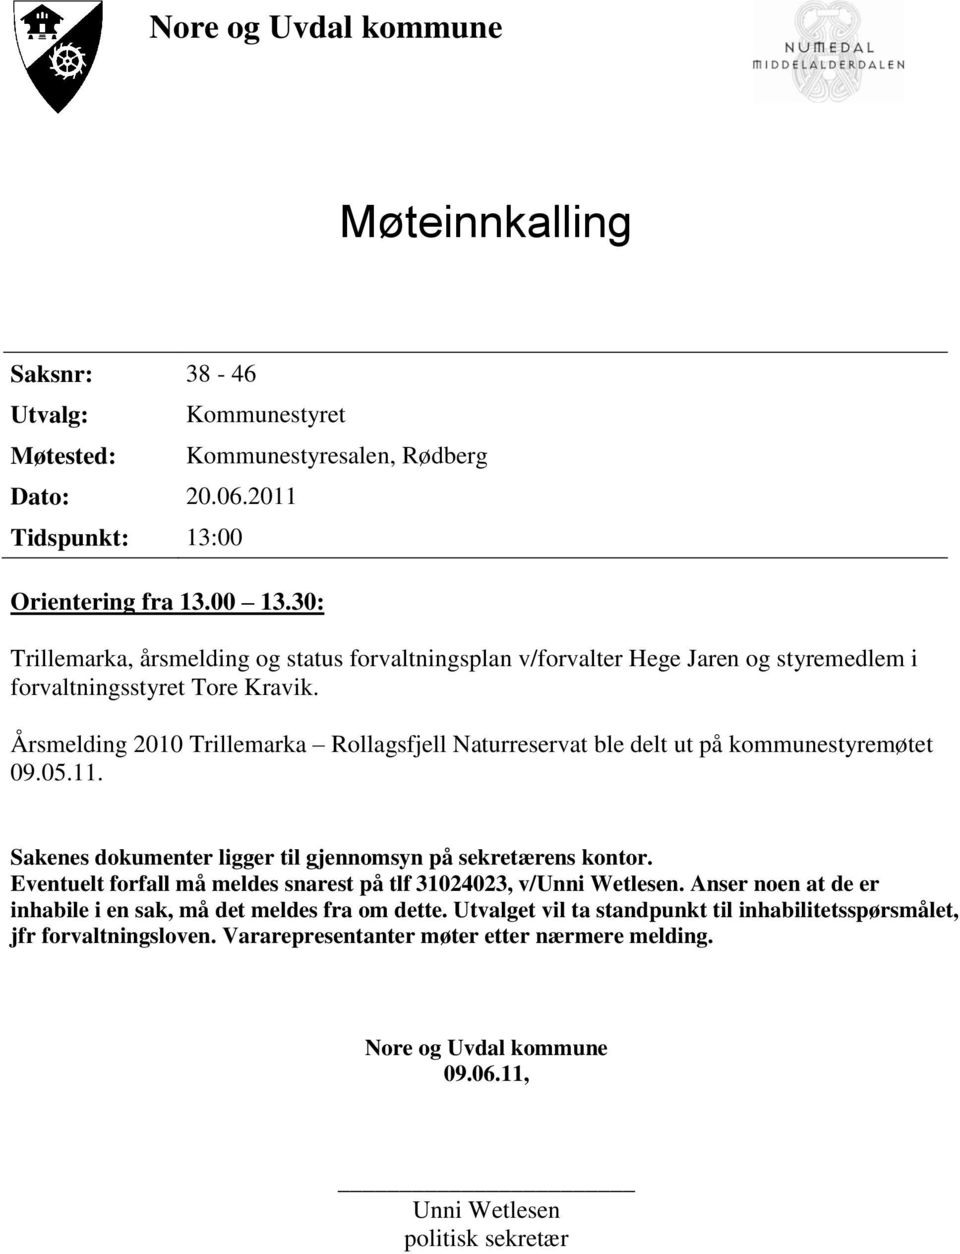 Årsmelding 2010 Trillemarka Rollagsfjell Naturreservat ble delt ut på kommunestyremøtet 09.05.11. Sakenes dokumenter ligger til gjennomsyn på sekretærens kontor.